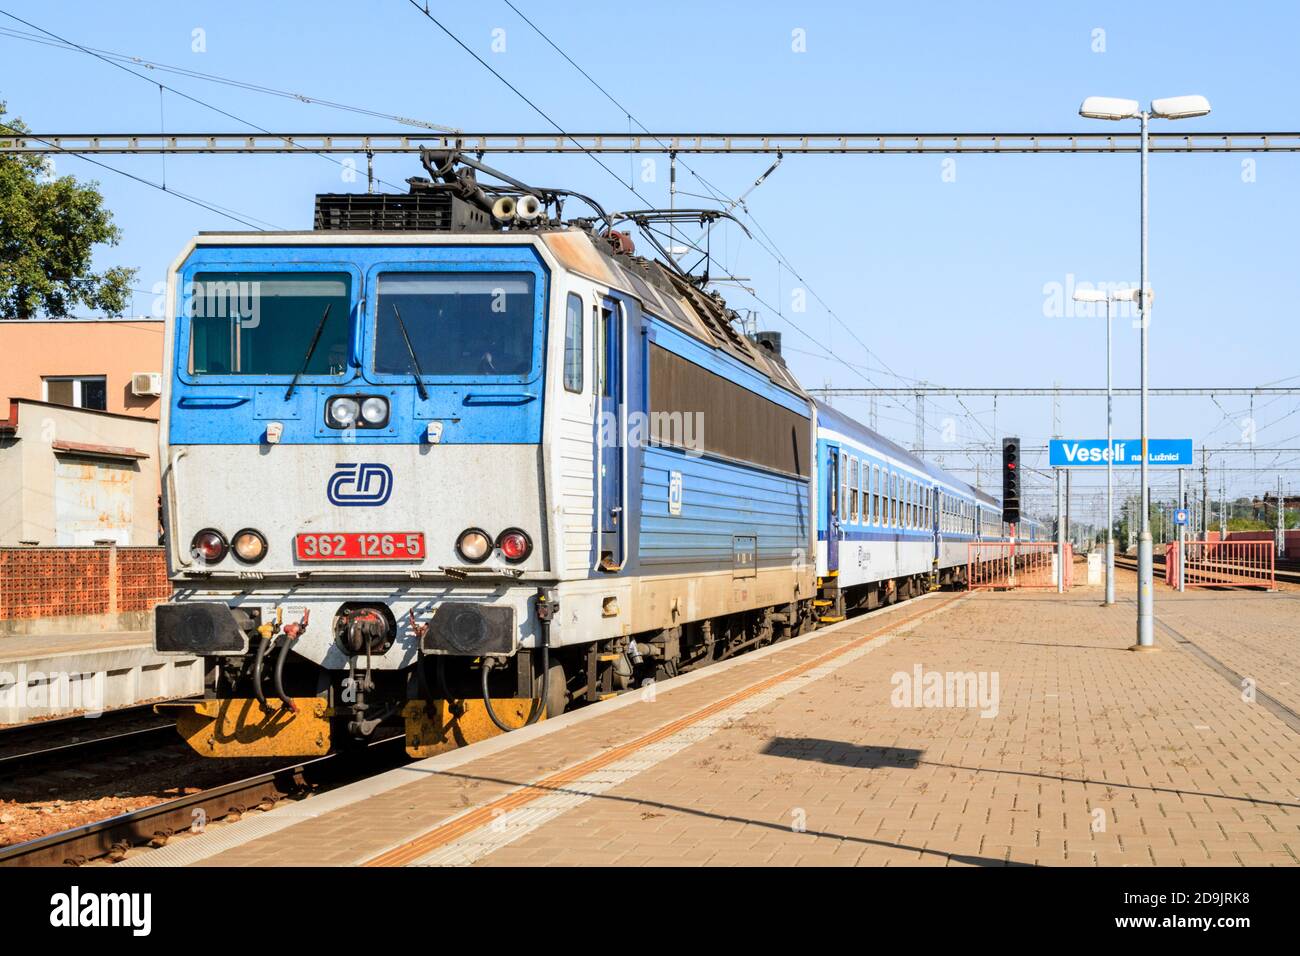 Un treno passeggeri per locomotiva elettrica di classe 362 gestito dall'operatore ferroviario ceco, České dráhy, che arriva a Veselí nad Lužnicí, Repubblica Ceca Foto Stock